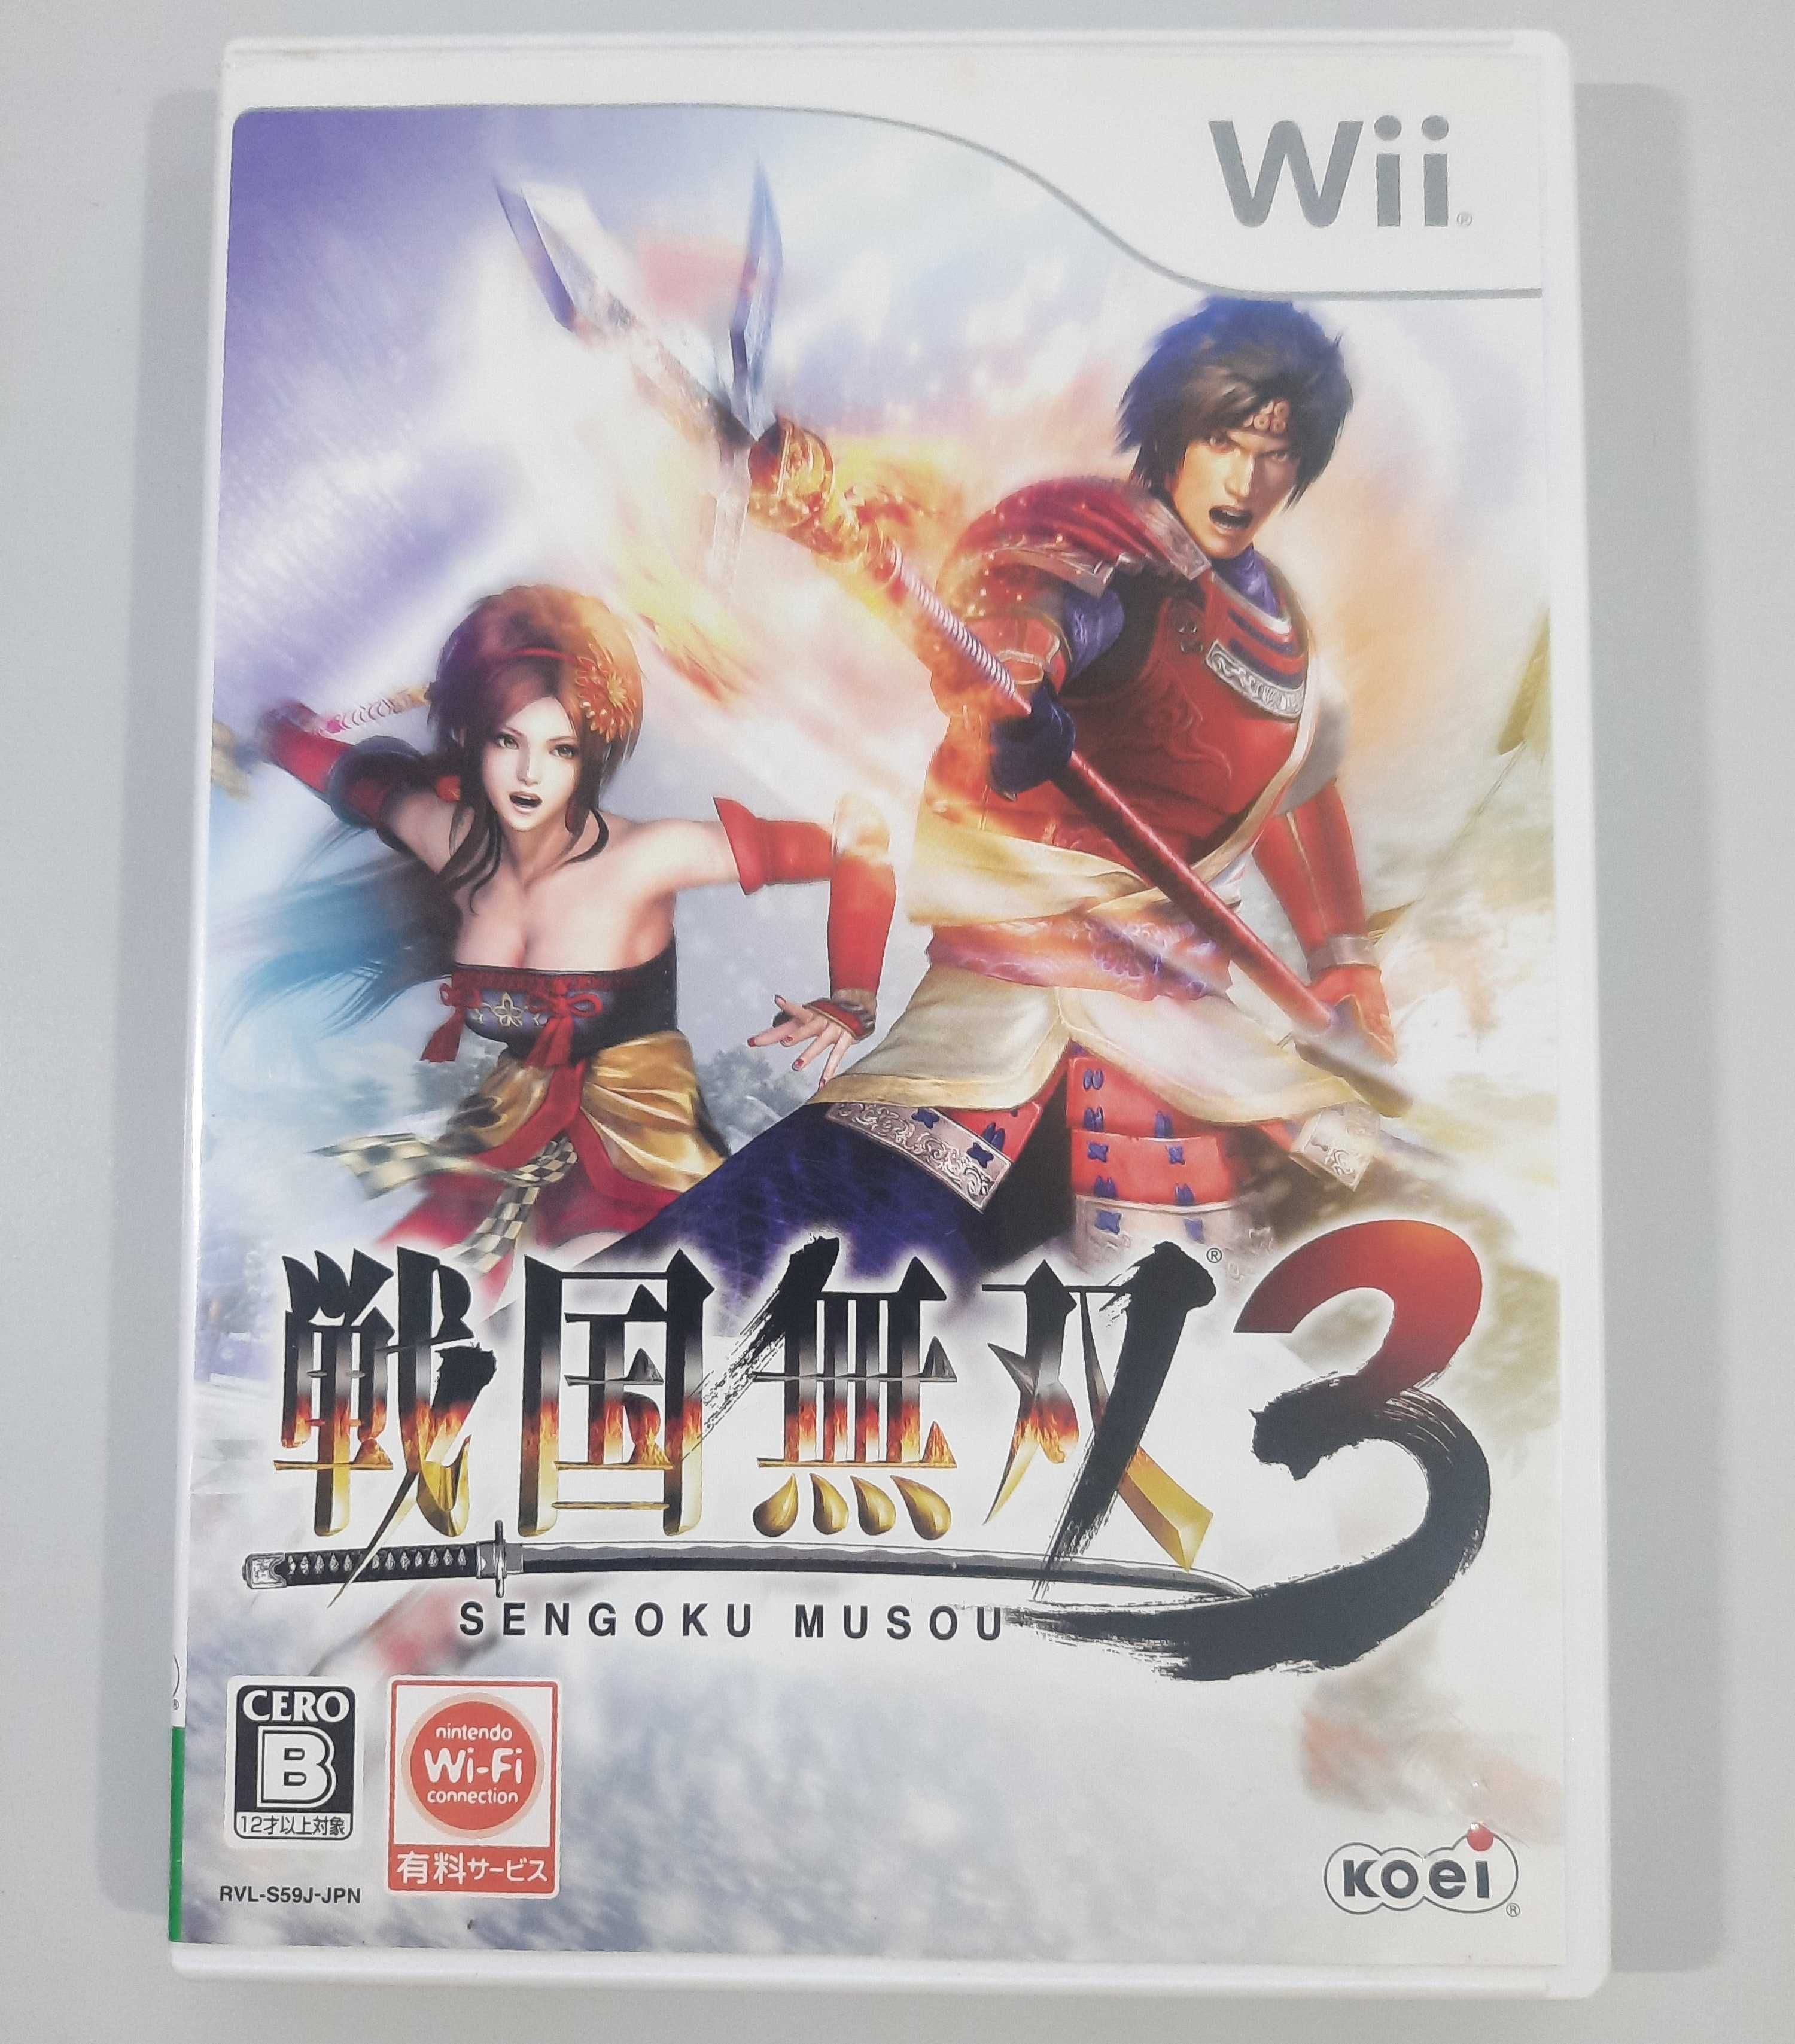 Sengoku Musou 3 / Wii [NTSC-J]